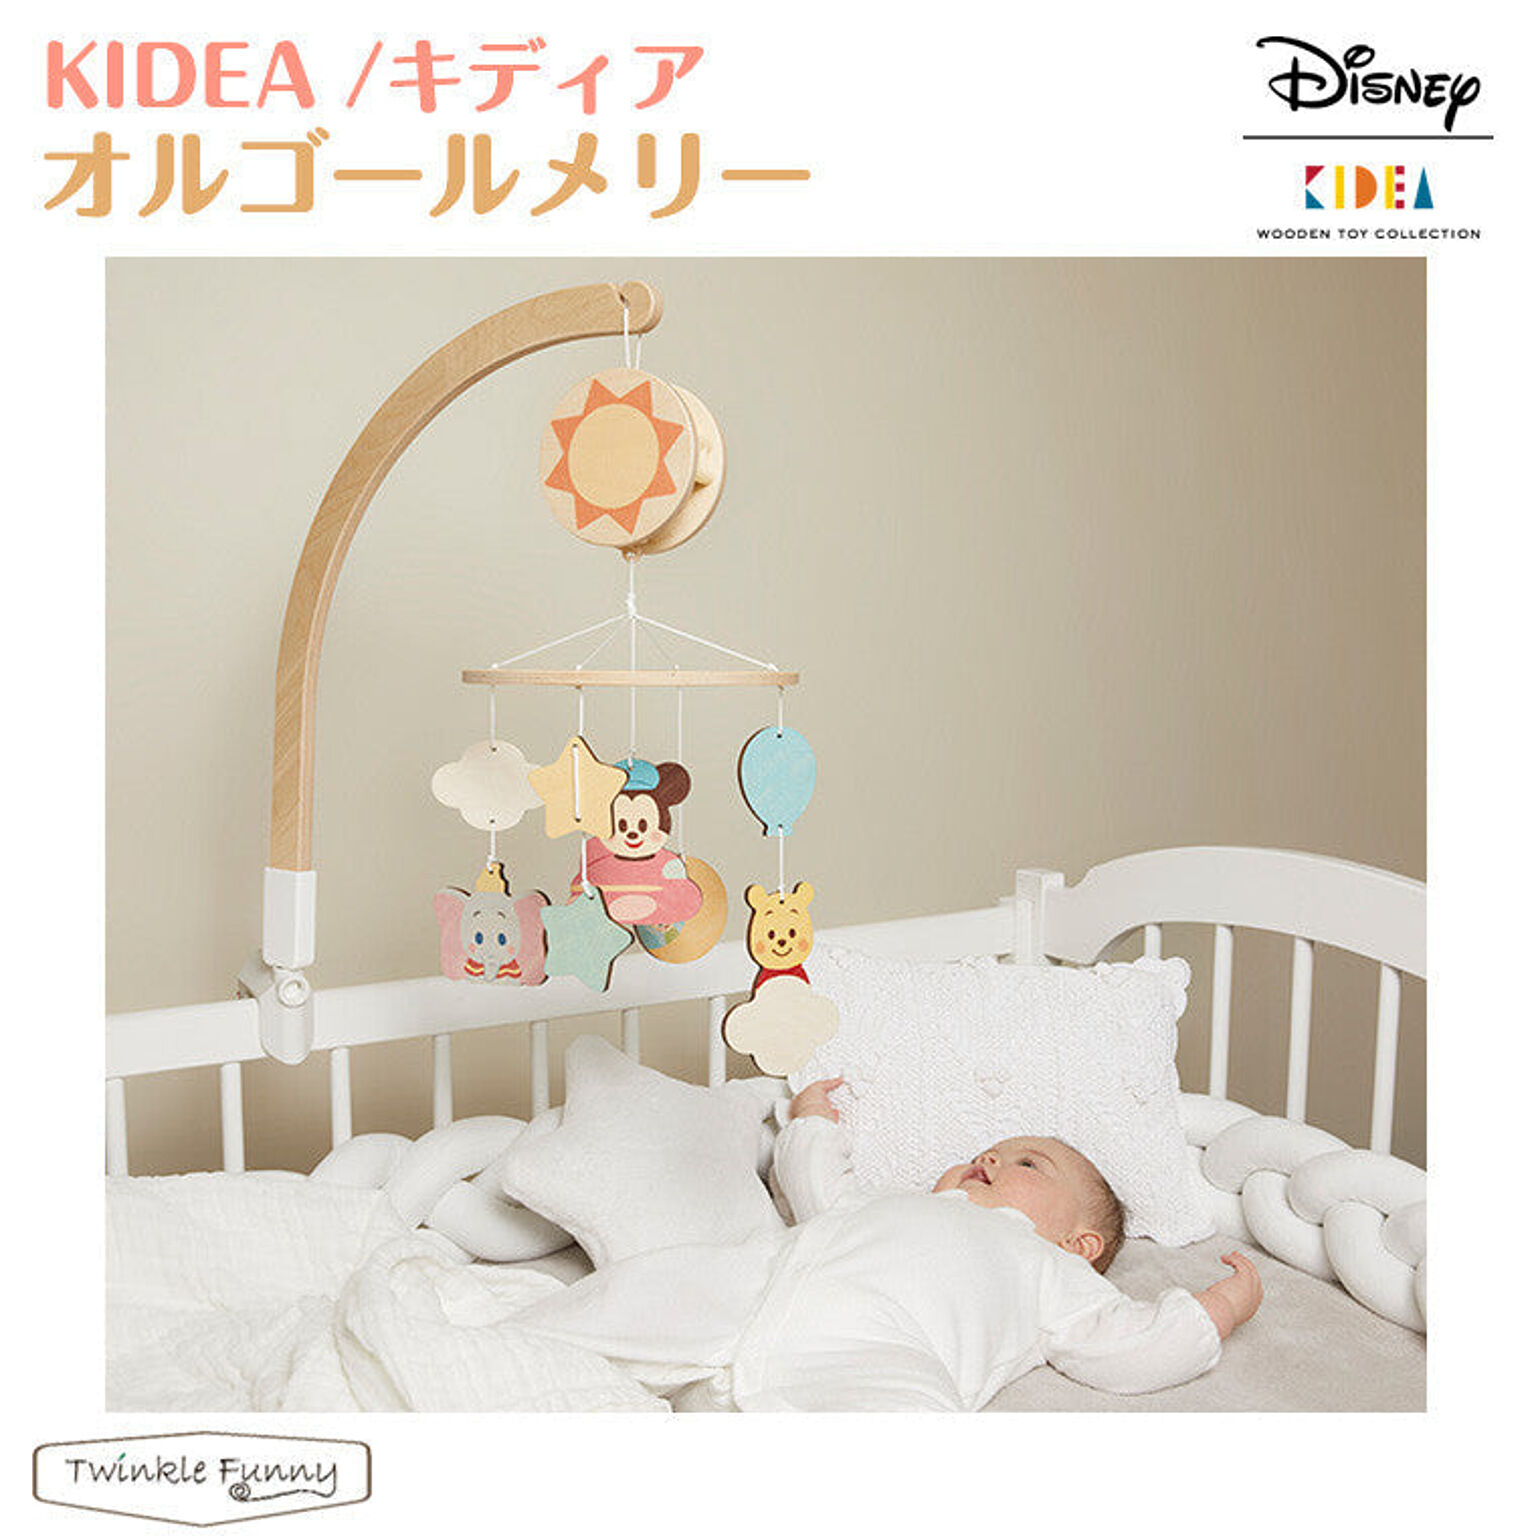 【正規販売店】キディア KIDEA オルゴールメリー ディズニー Disney TF-31282